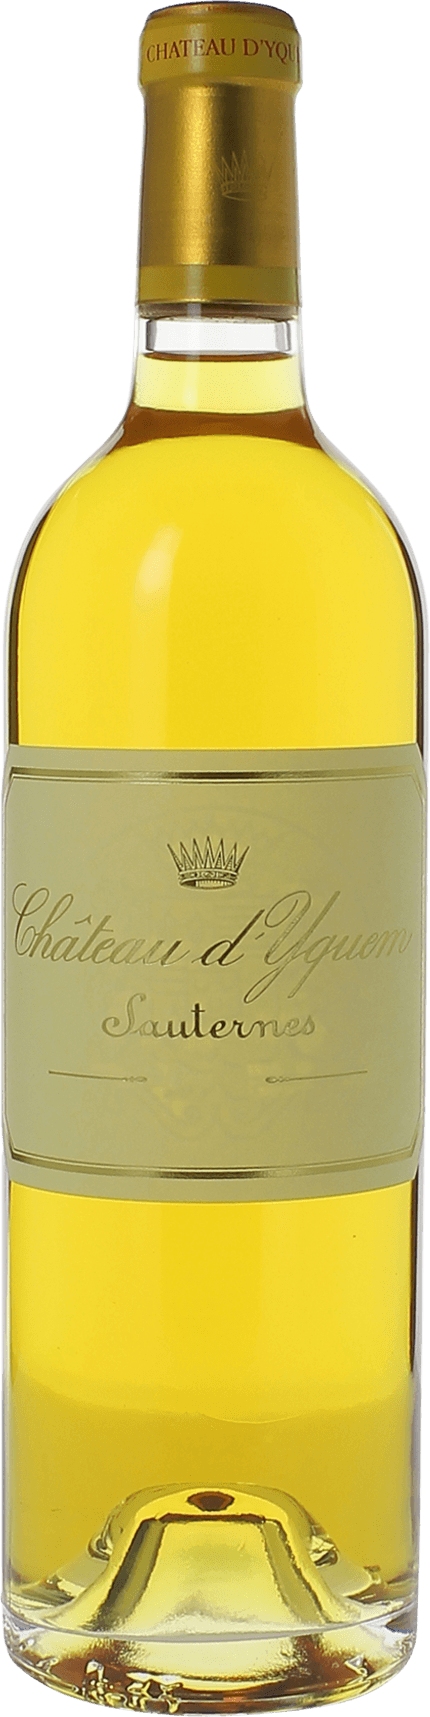 Yquem sauternes 1988 1er Grand cru class Sauternes, Bordeaux blanc